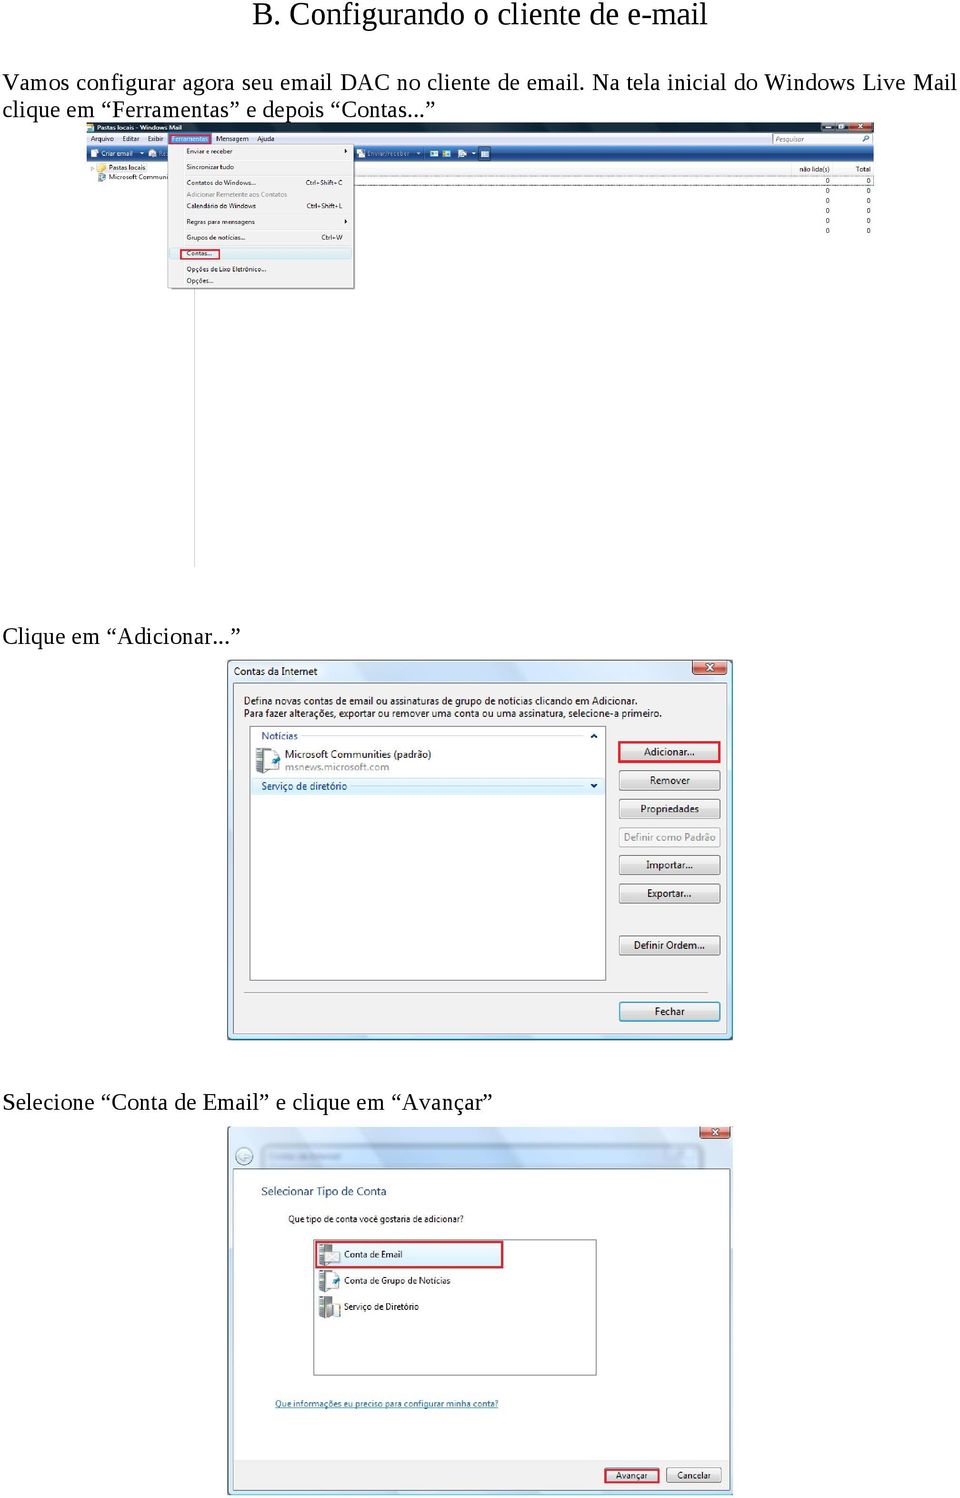 Na tela inicial do Windows Live Mail clique em Ferramentas